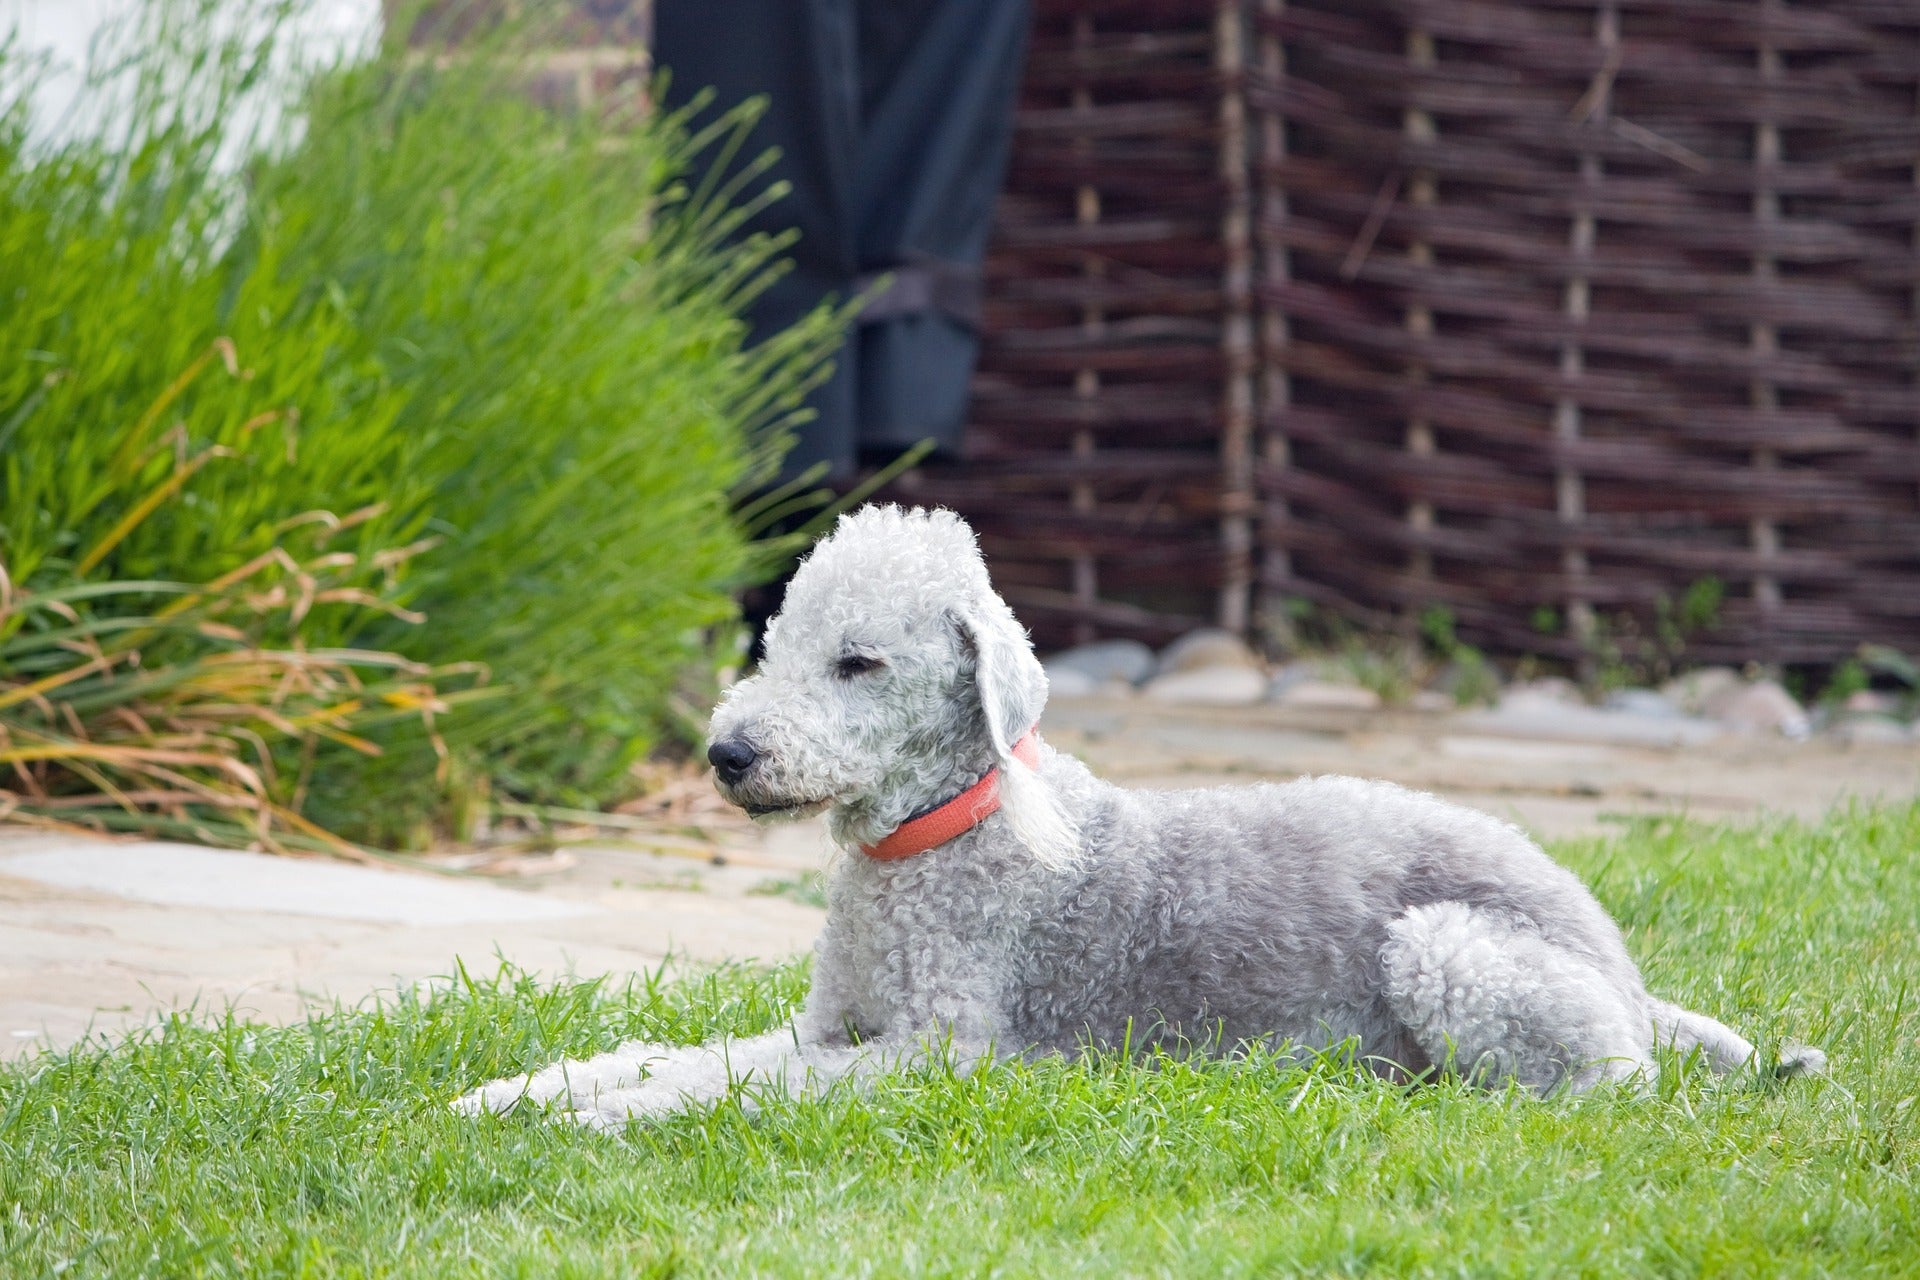 Bedlington terrier on grass.